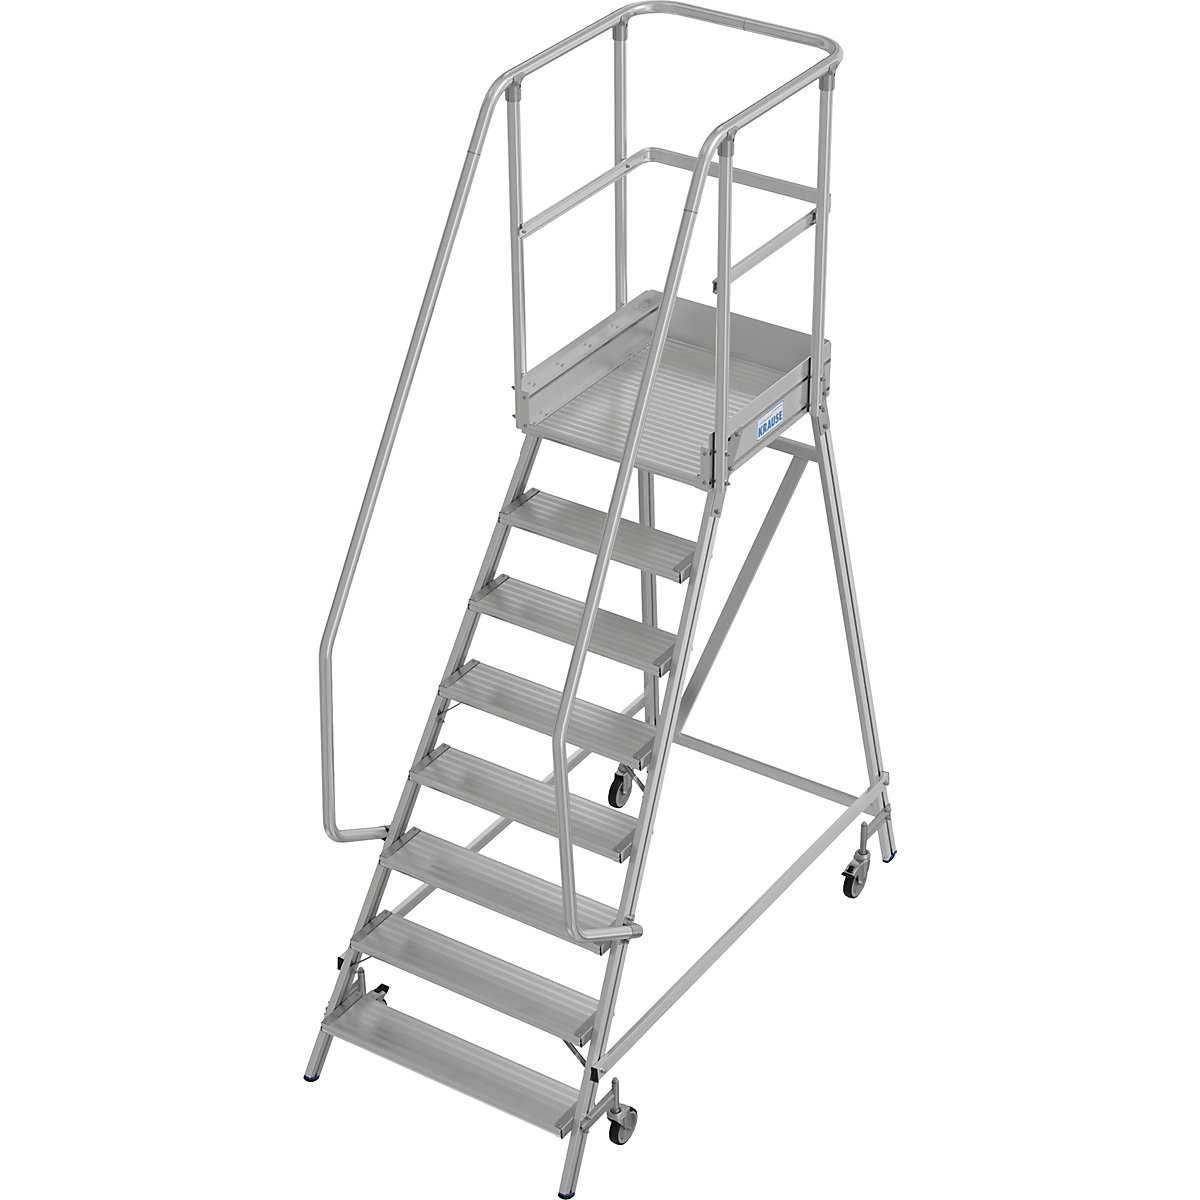 Escada de plataforma – KRAUSE, subida de um lado, proteção para os pés, 8 degraus-12